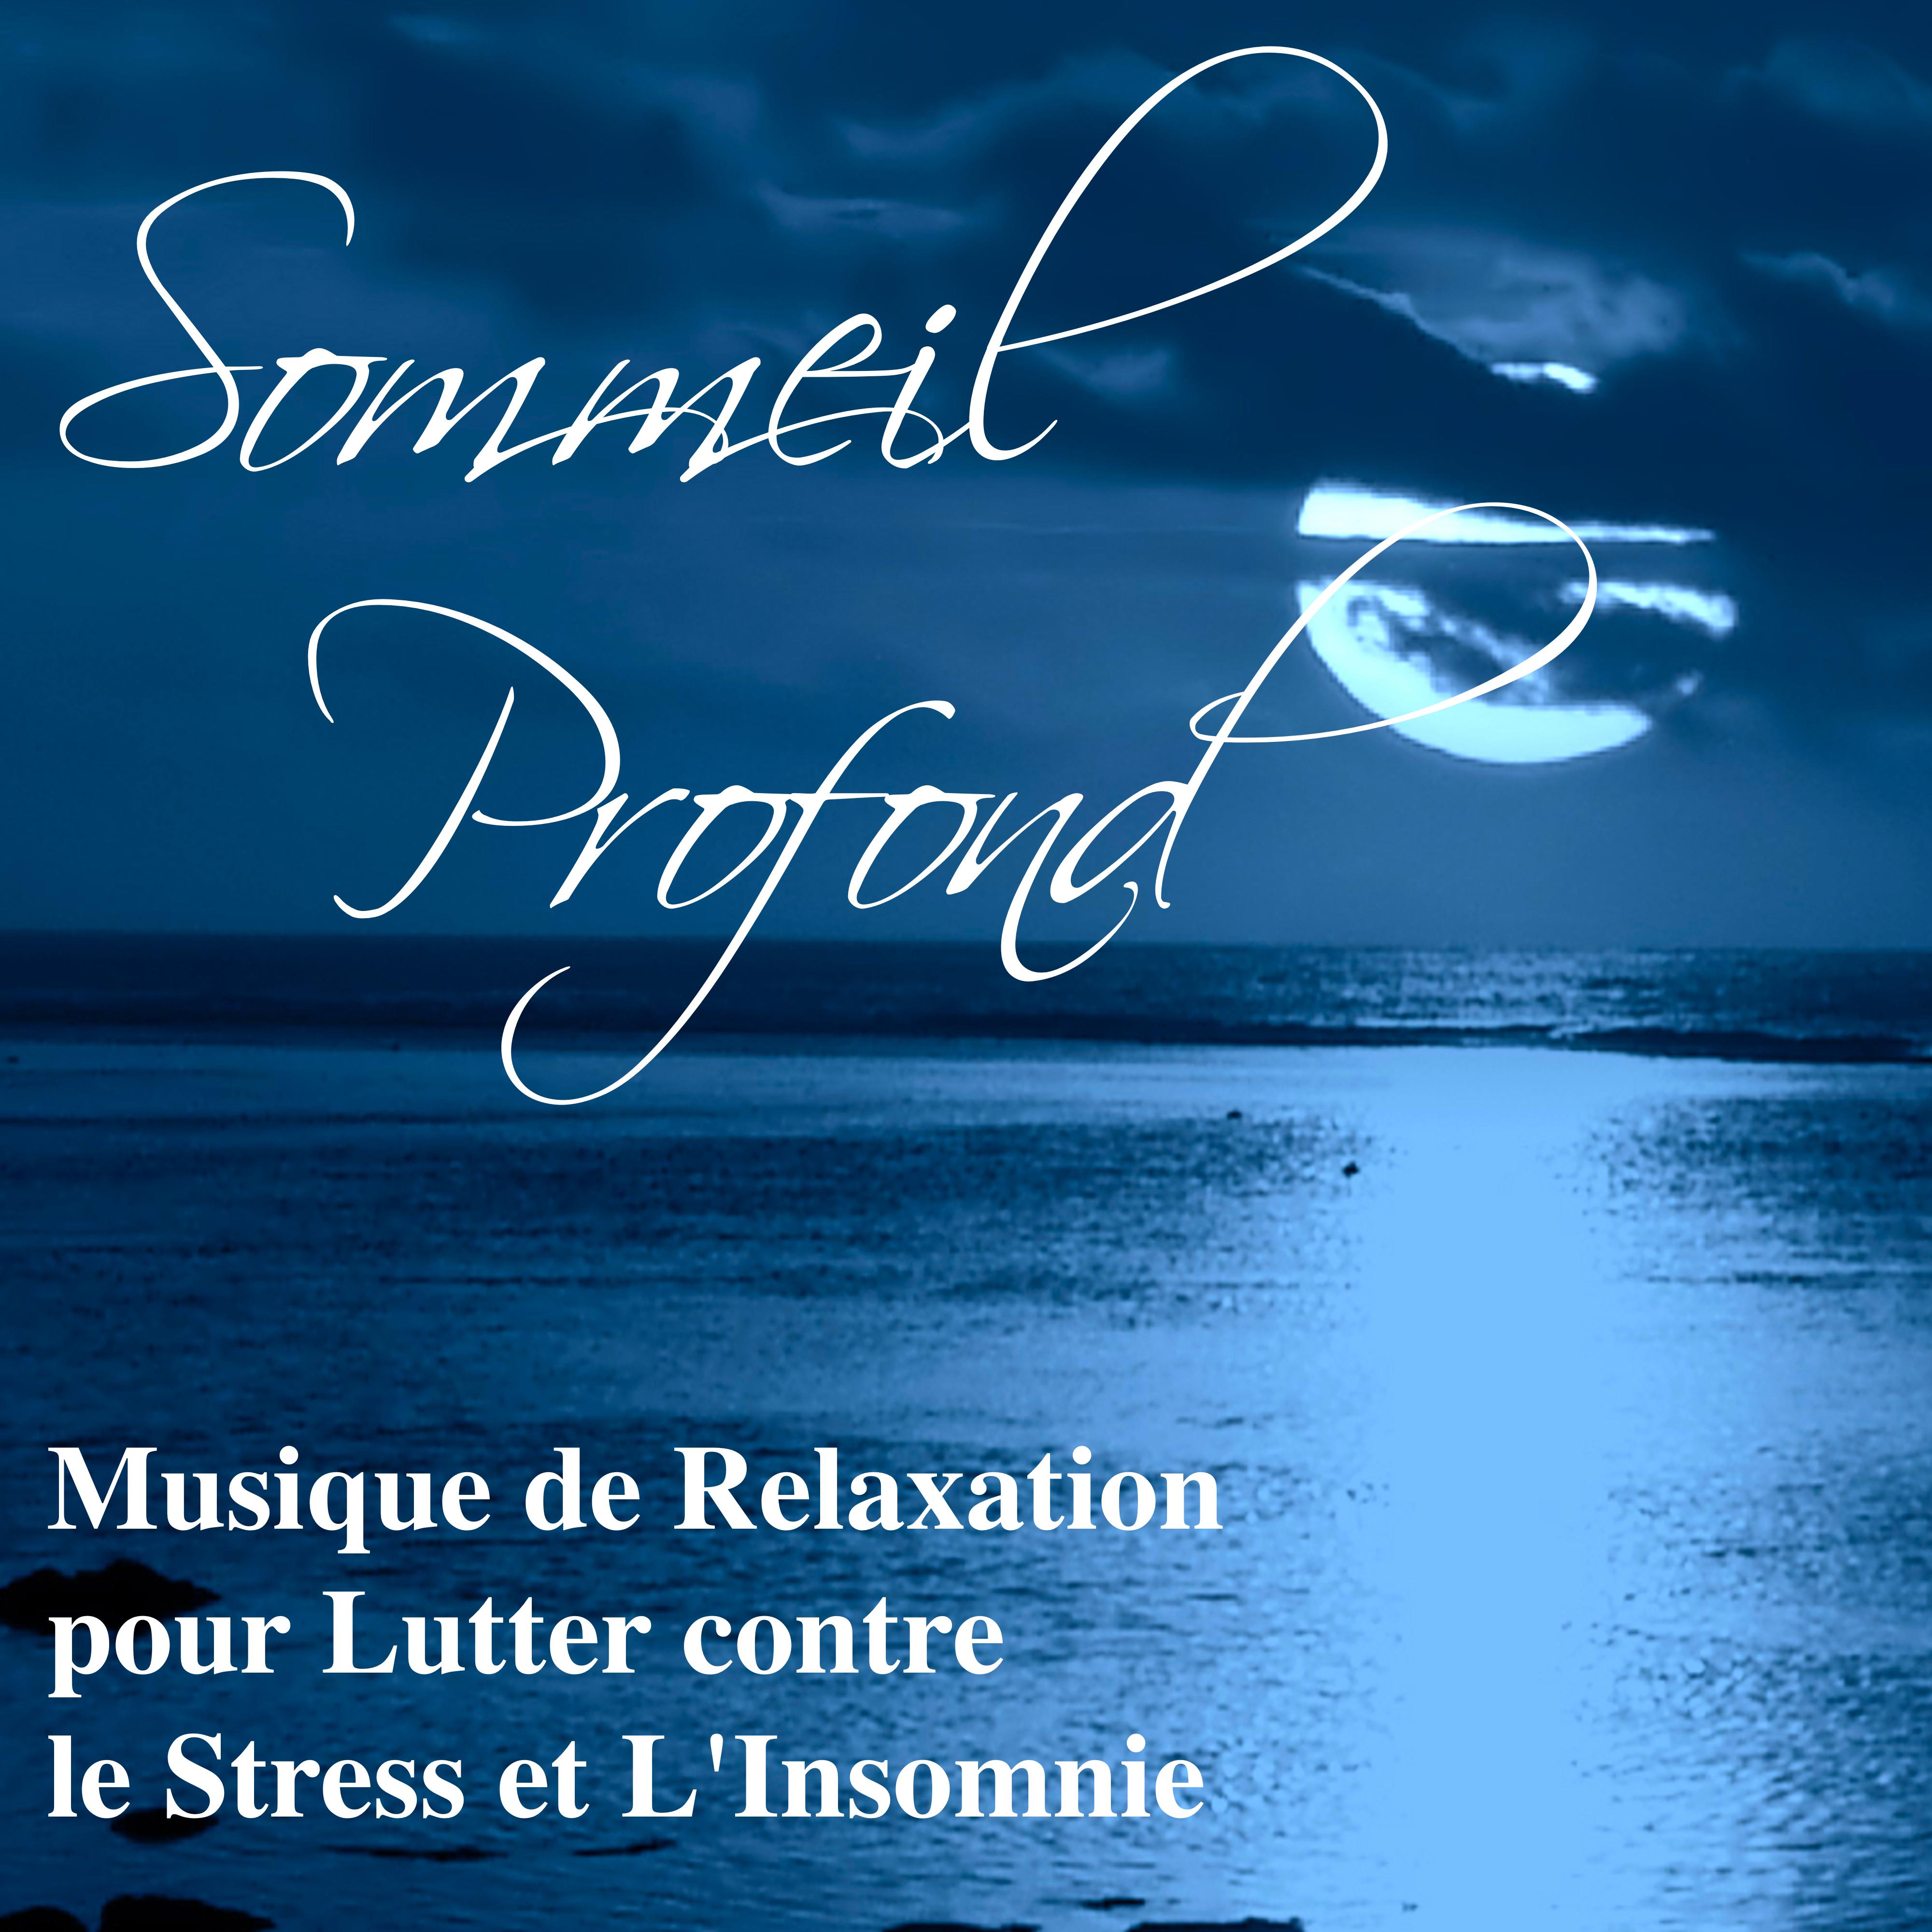 Sommeil Profond: Musique de Relaxation pour Lutter contre le Stress et L'Insomnie, Chansons de Piano Douce pour se Détendre